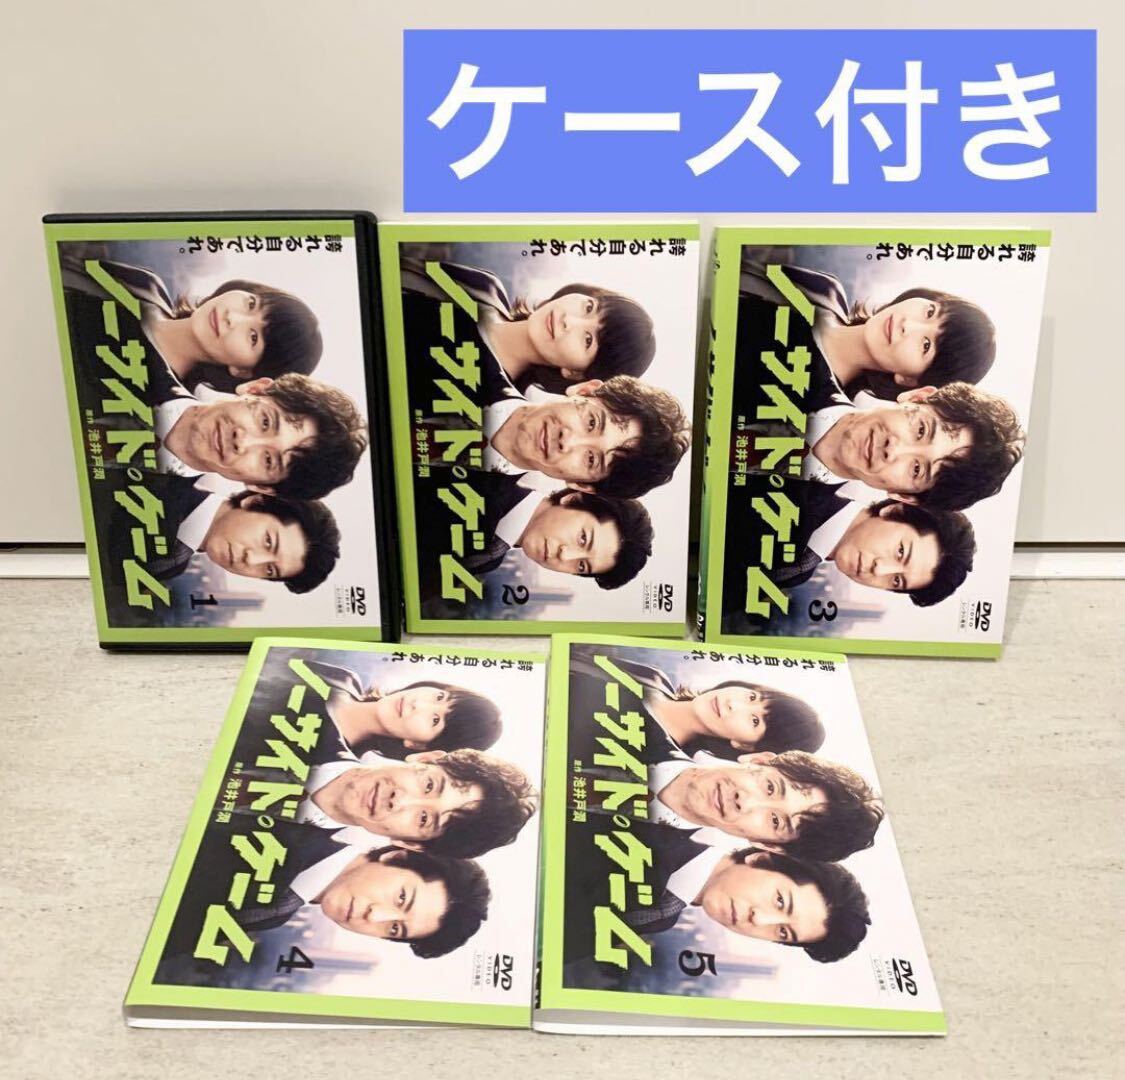 ノーサイド・ゲーム DVD 全5巻 全巻セット 大泉洋の画像1